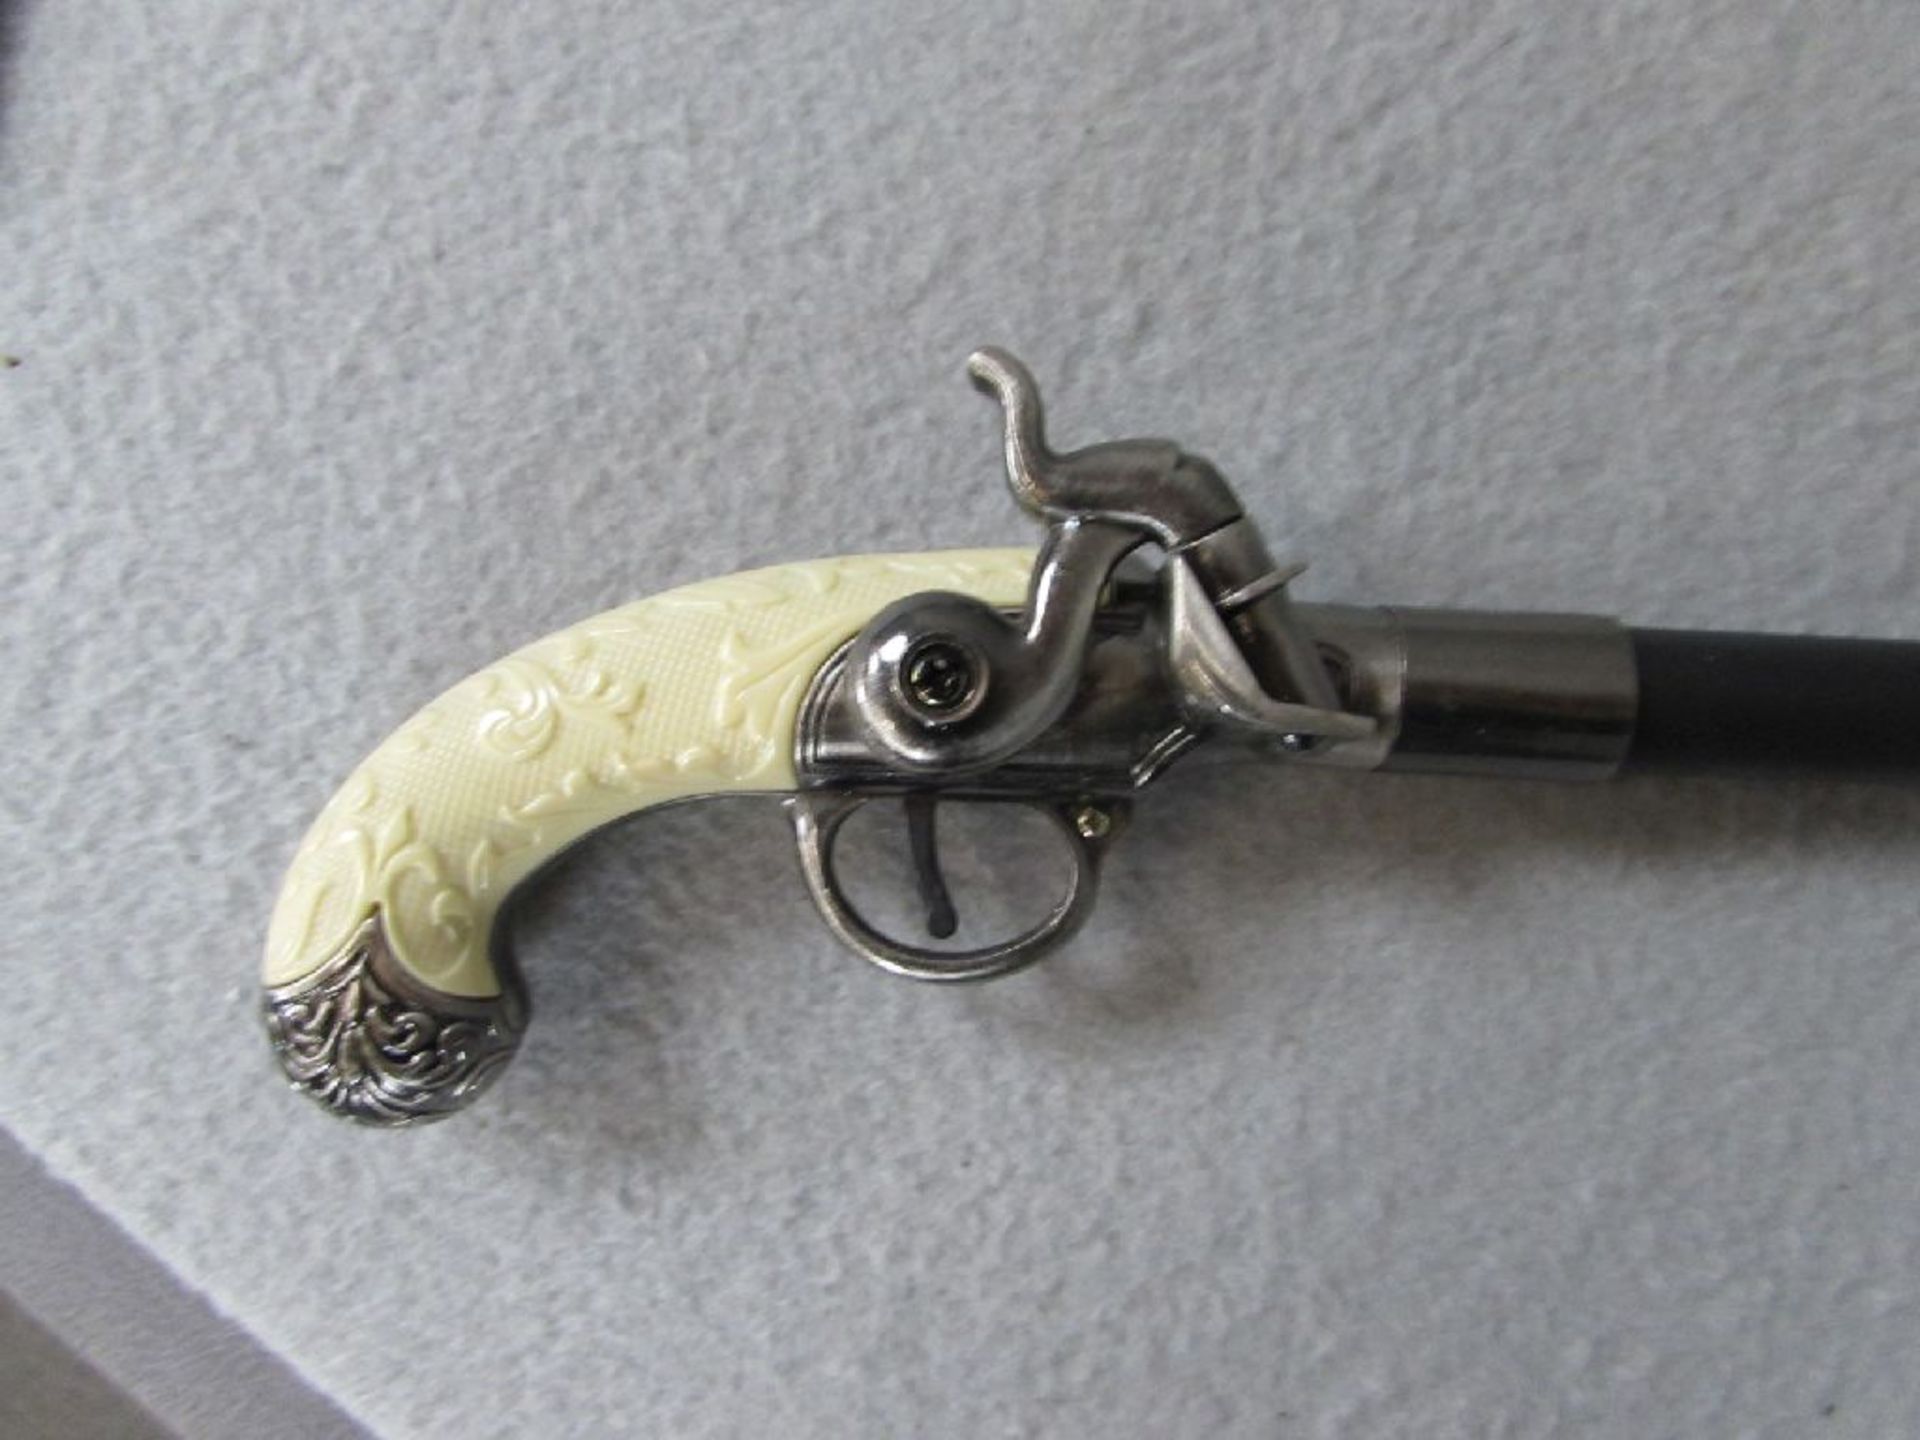 Spazierstock griff in Pistolenform Metall zerlegbar 91cm höhe - Bild 2 aus 2